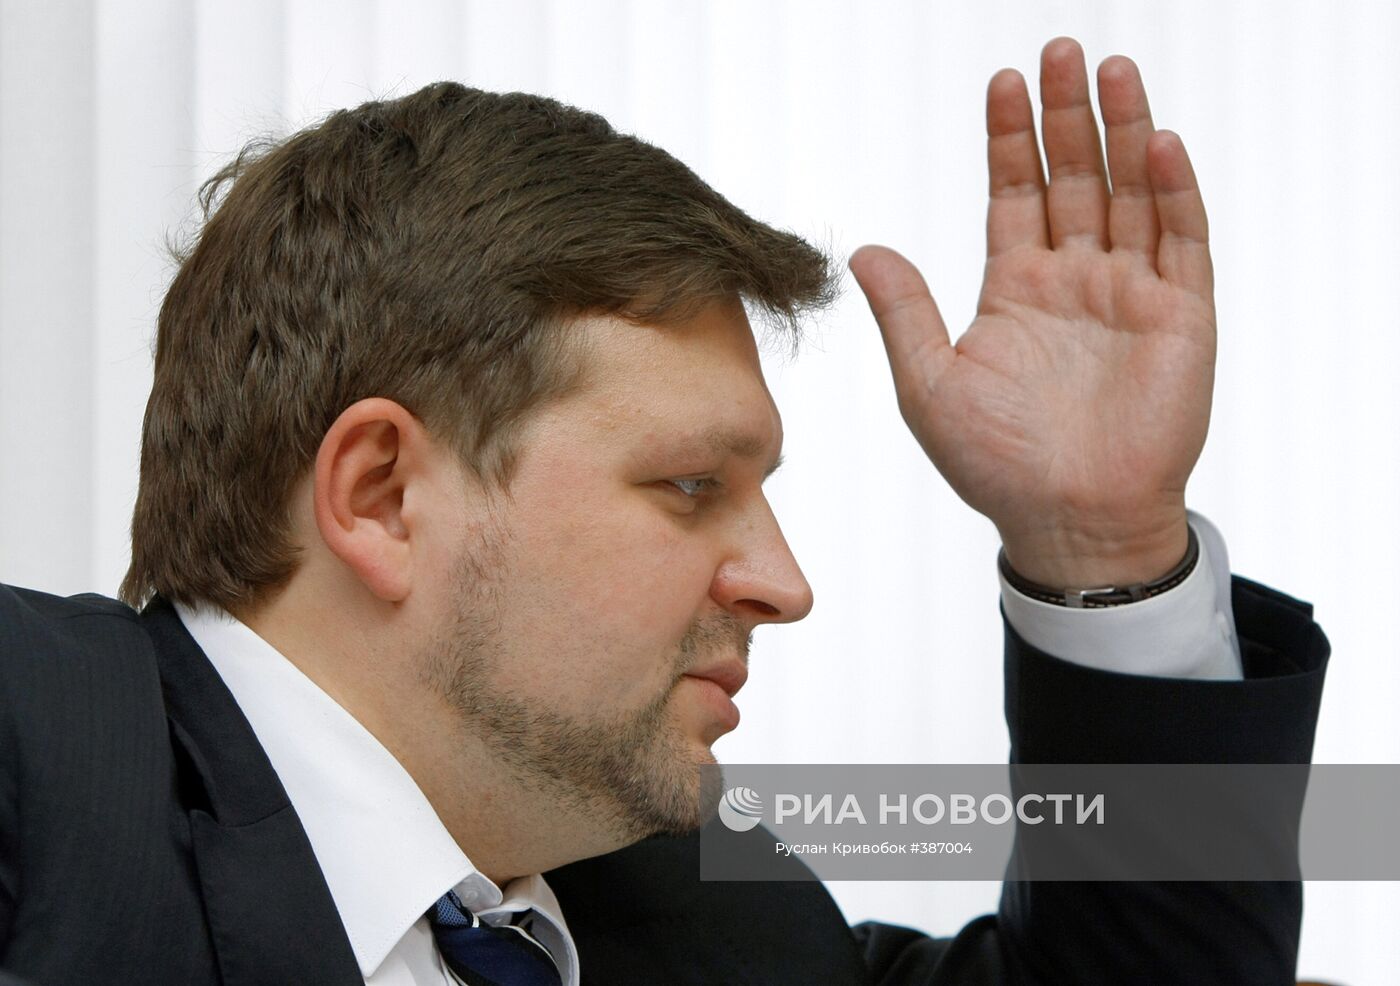 Губернатор Кировской области Никита Белых во время интервью